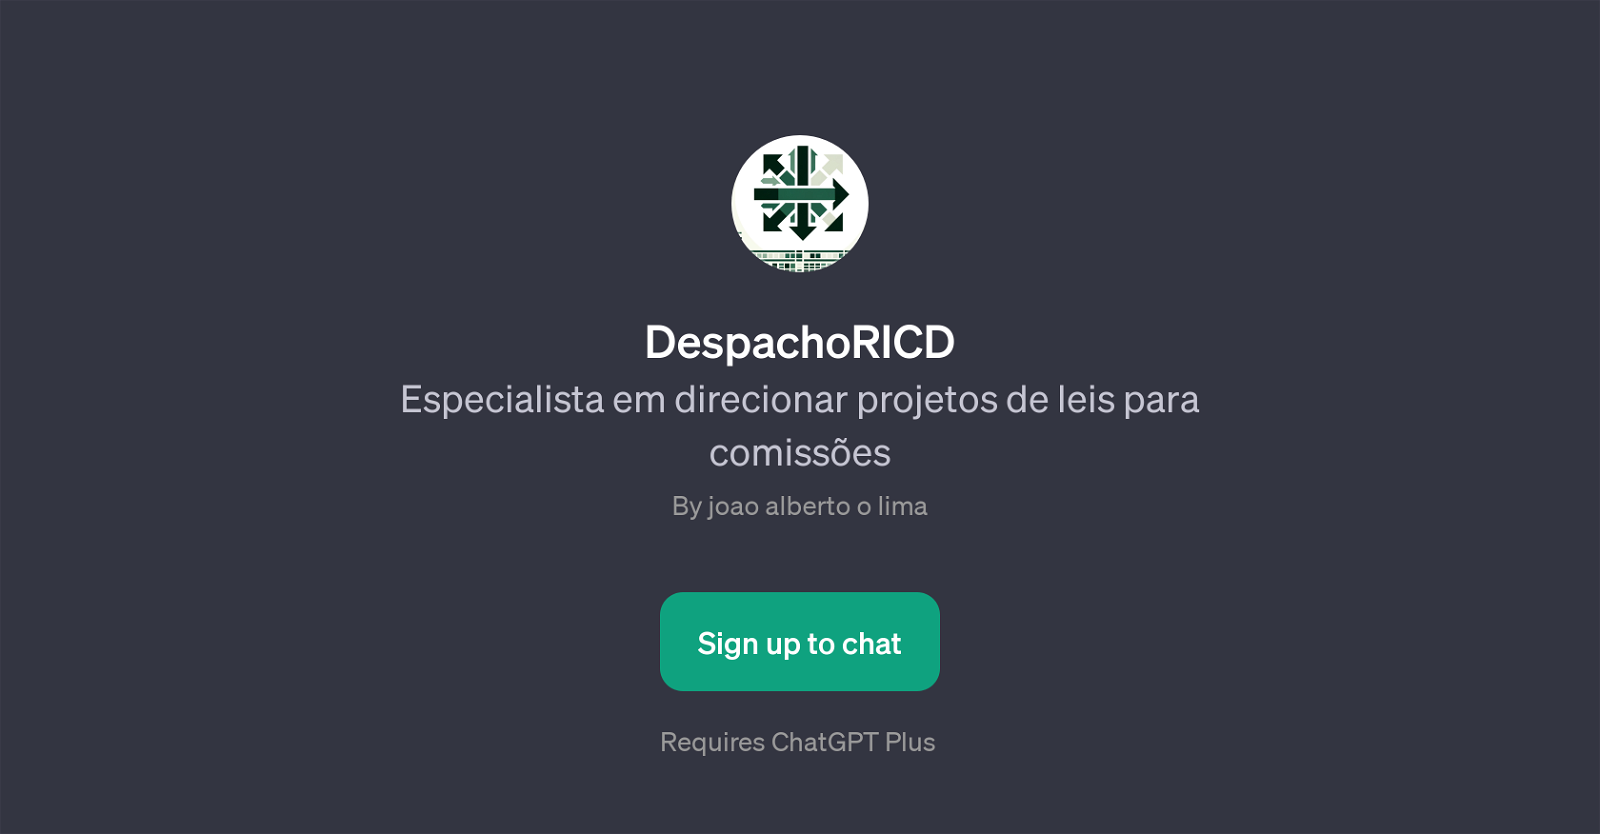 DespachoRICD website